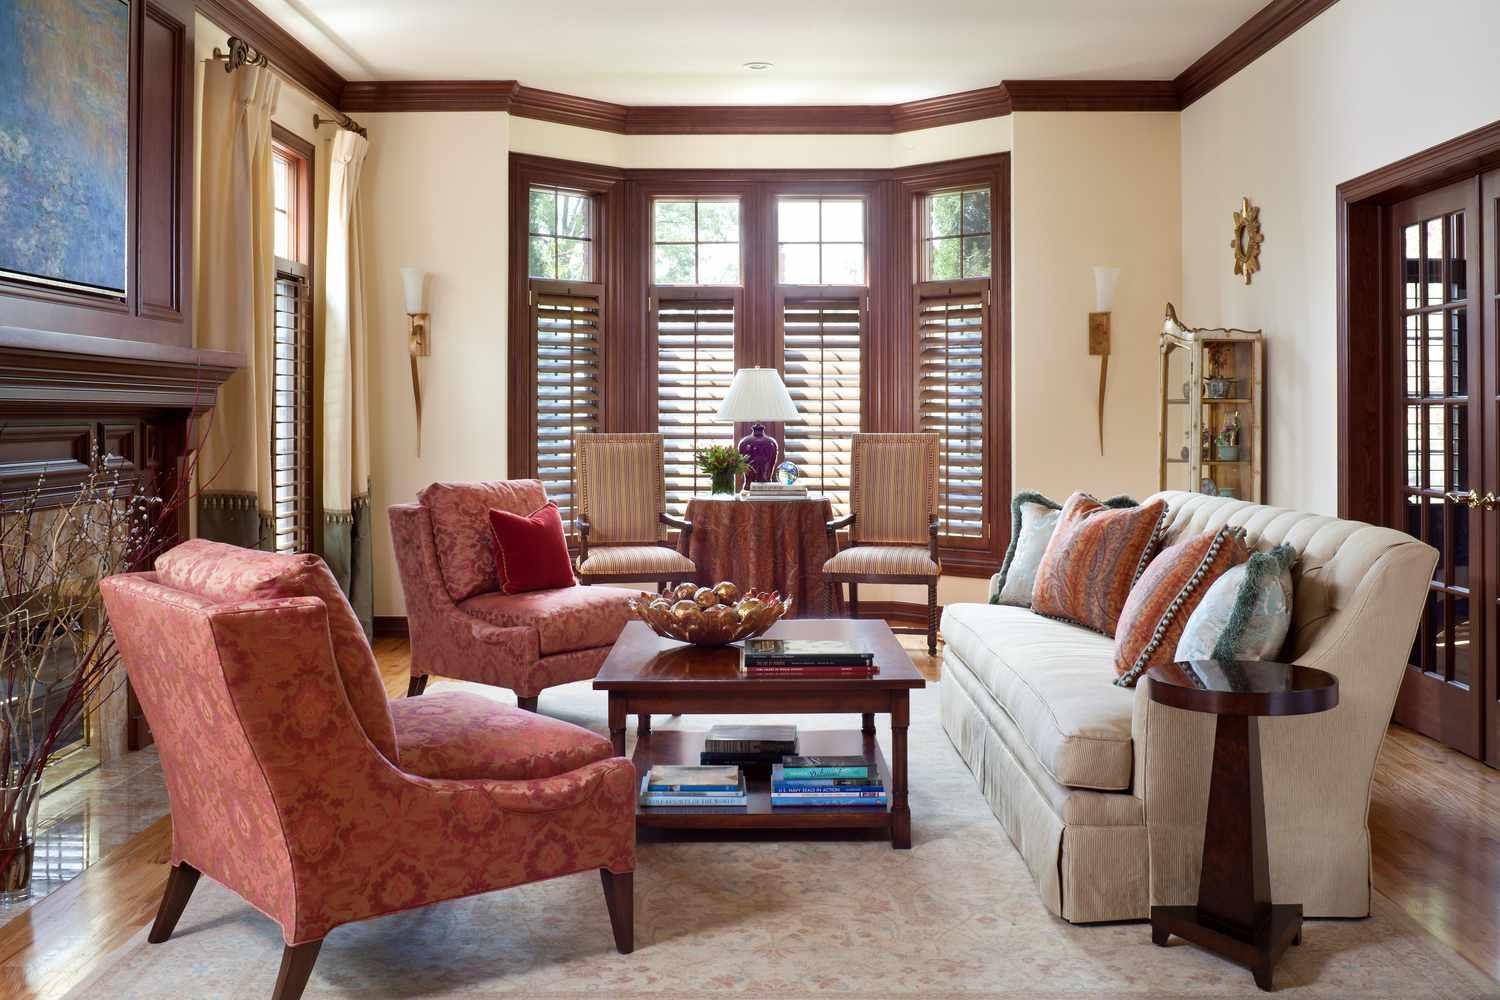 Uma sala de estar tem paredes cor de pêssego decoradas com madeira rica quase vermelha. As portas também são revestidas de madeira